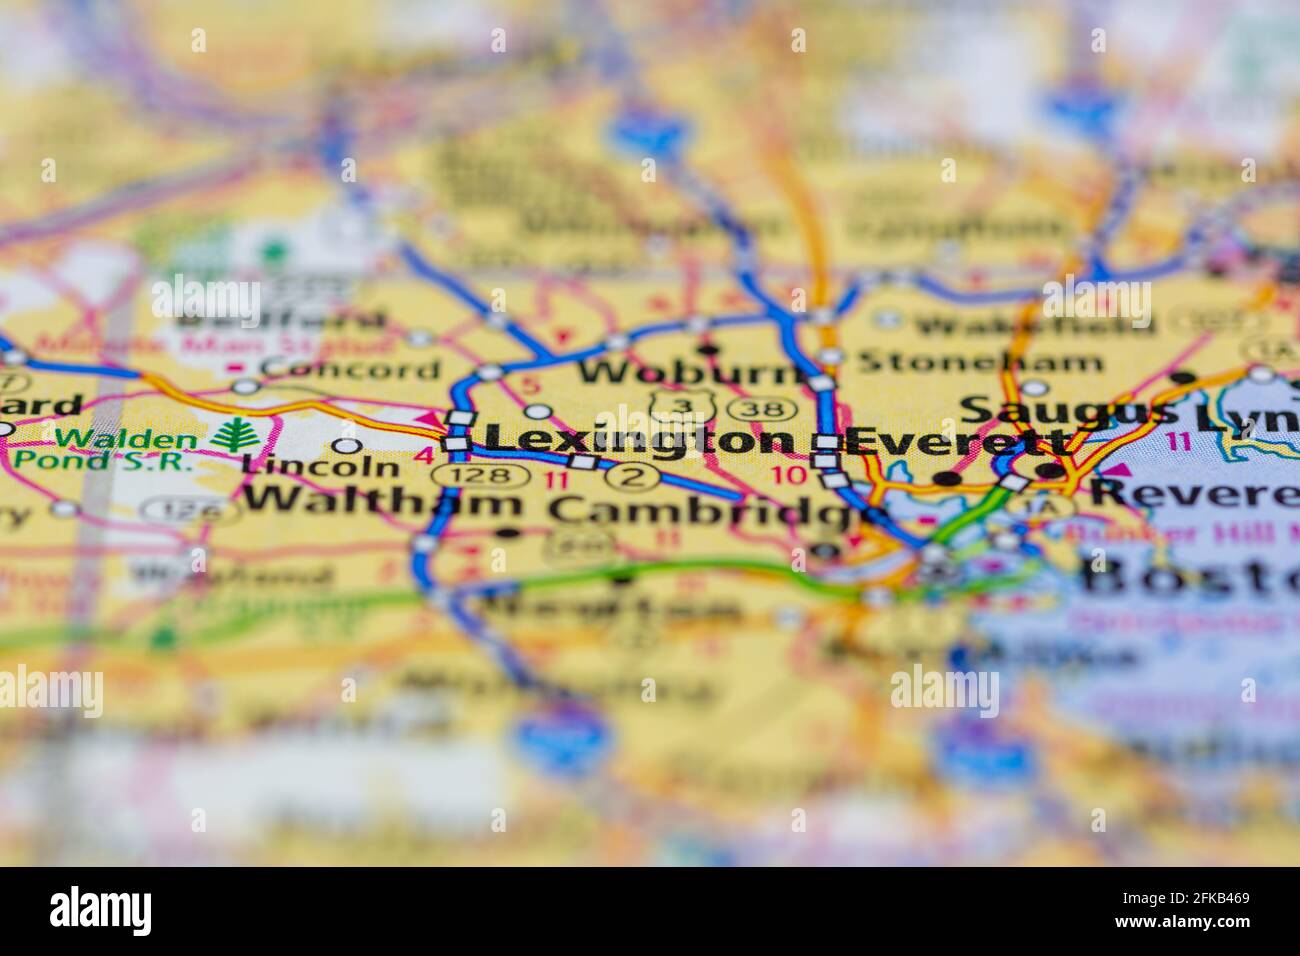 Lexington Massachusetts États-Unis sur une carte de la géographie ou sur une route carte Banque D'Images